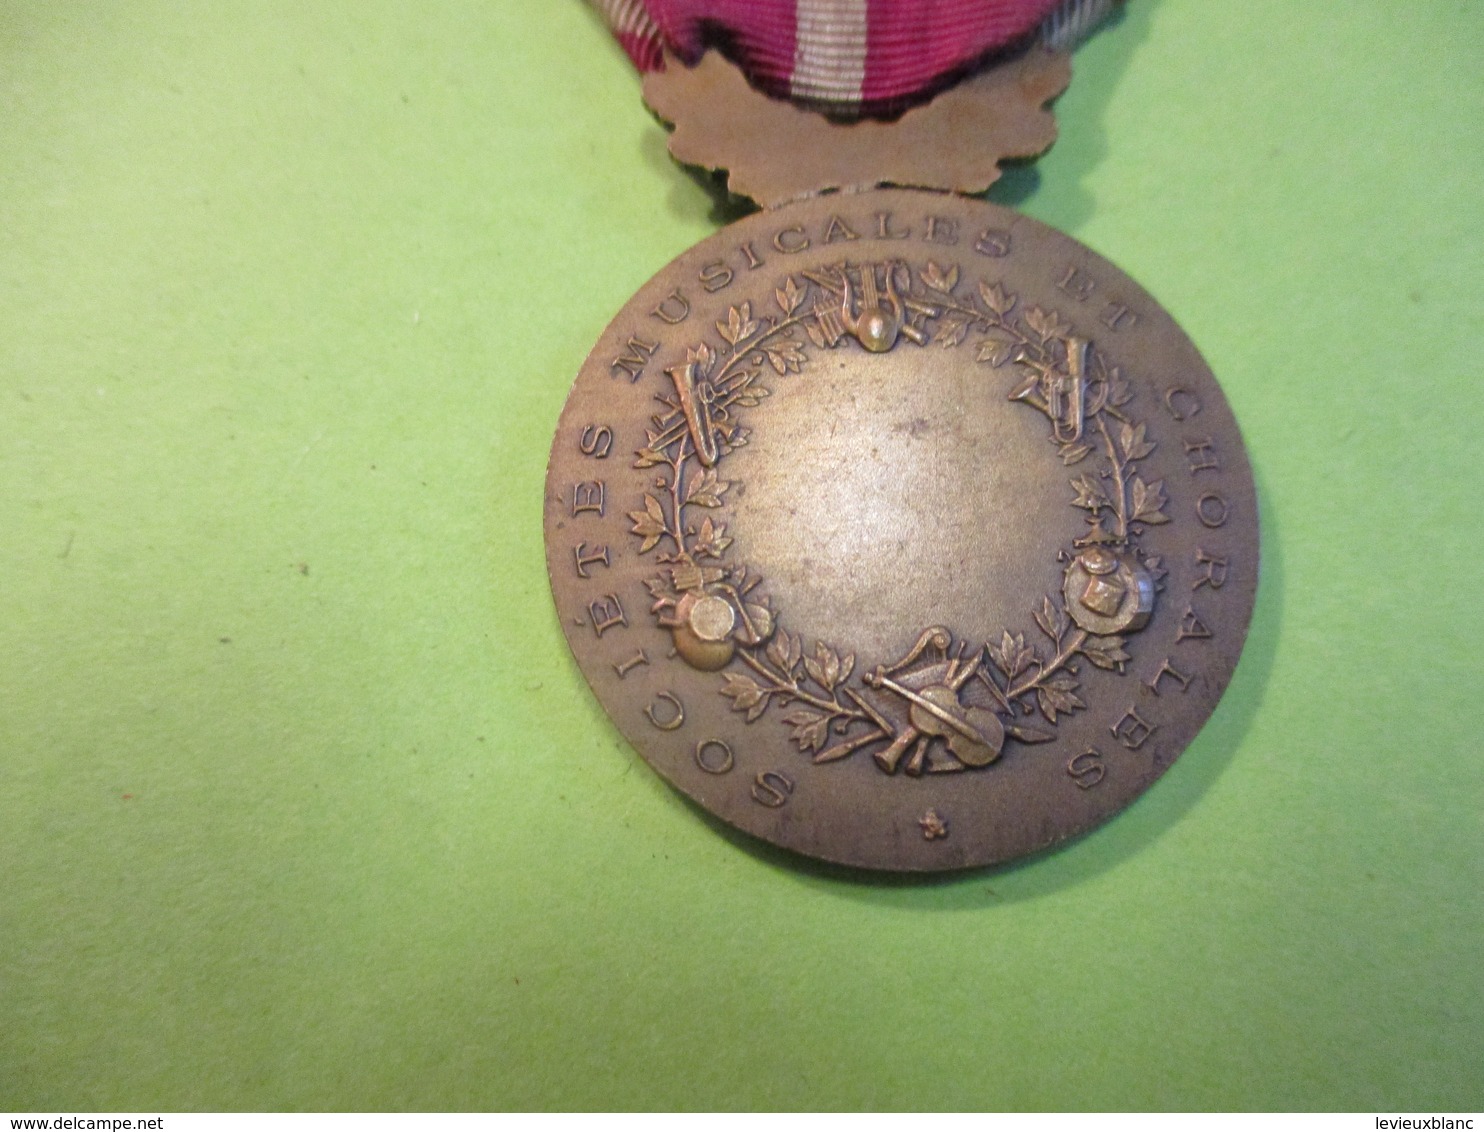 Médaille D'Honneur / Sociétés Musicales Et Chorales /Joueuse De Lyre  /J VATINELLE/ /1924    MED349 - France